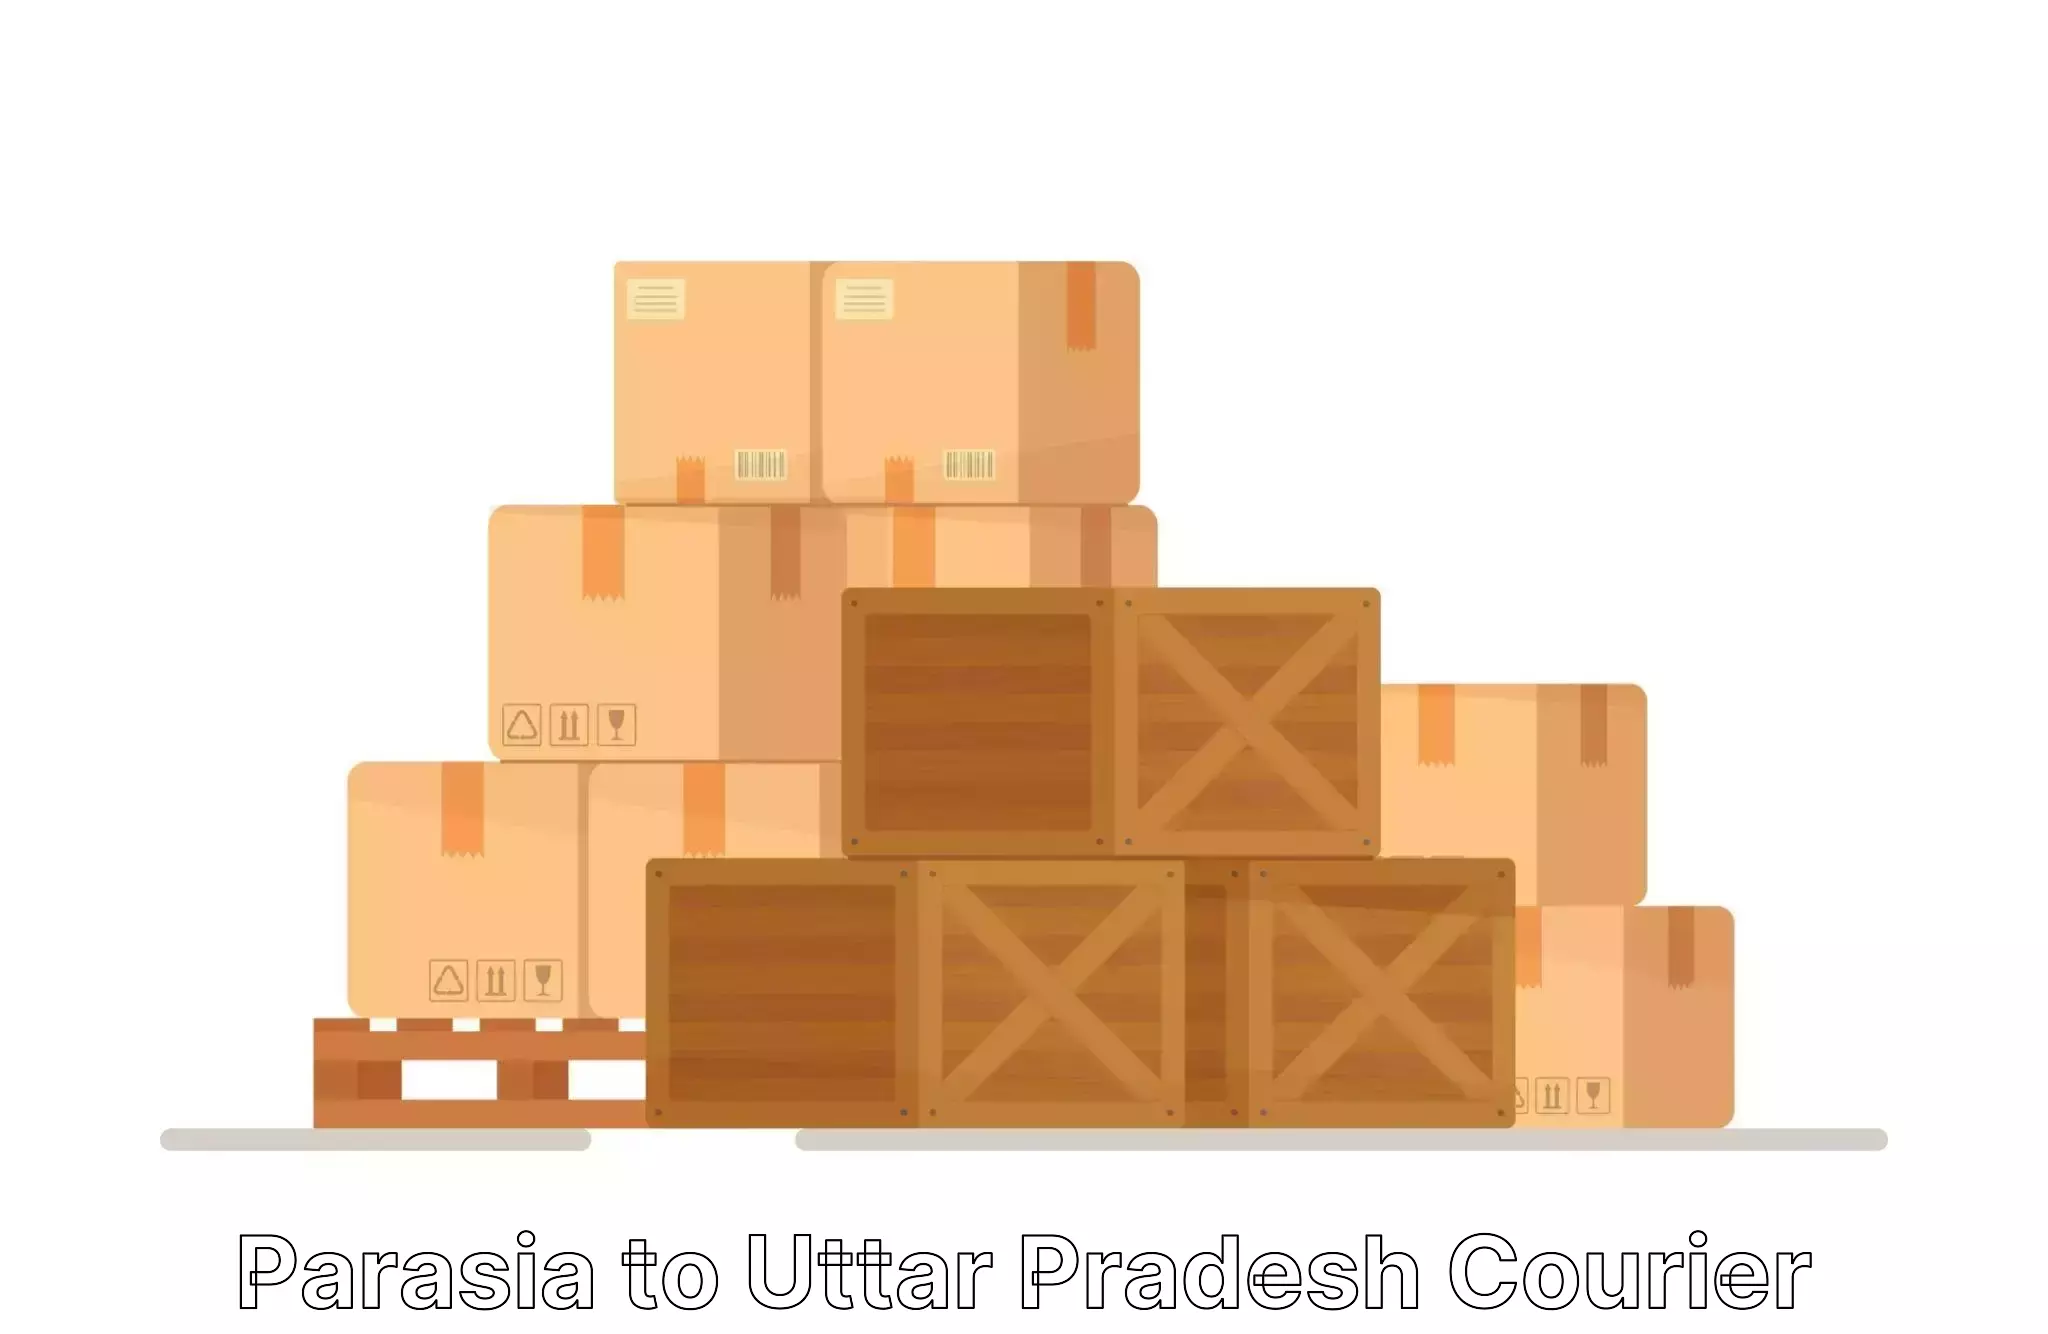 Safe home relocation Parasia to Uttar Pradesh